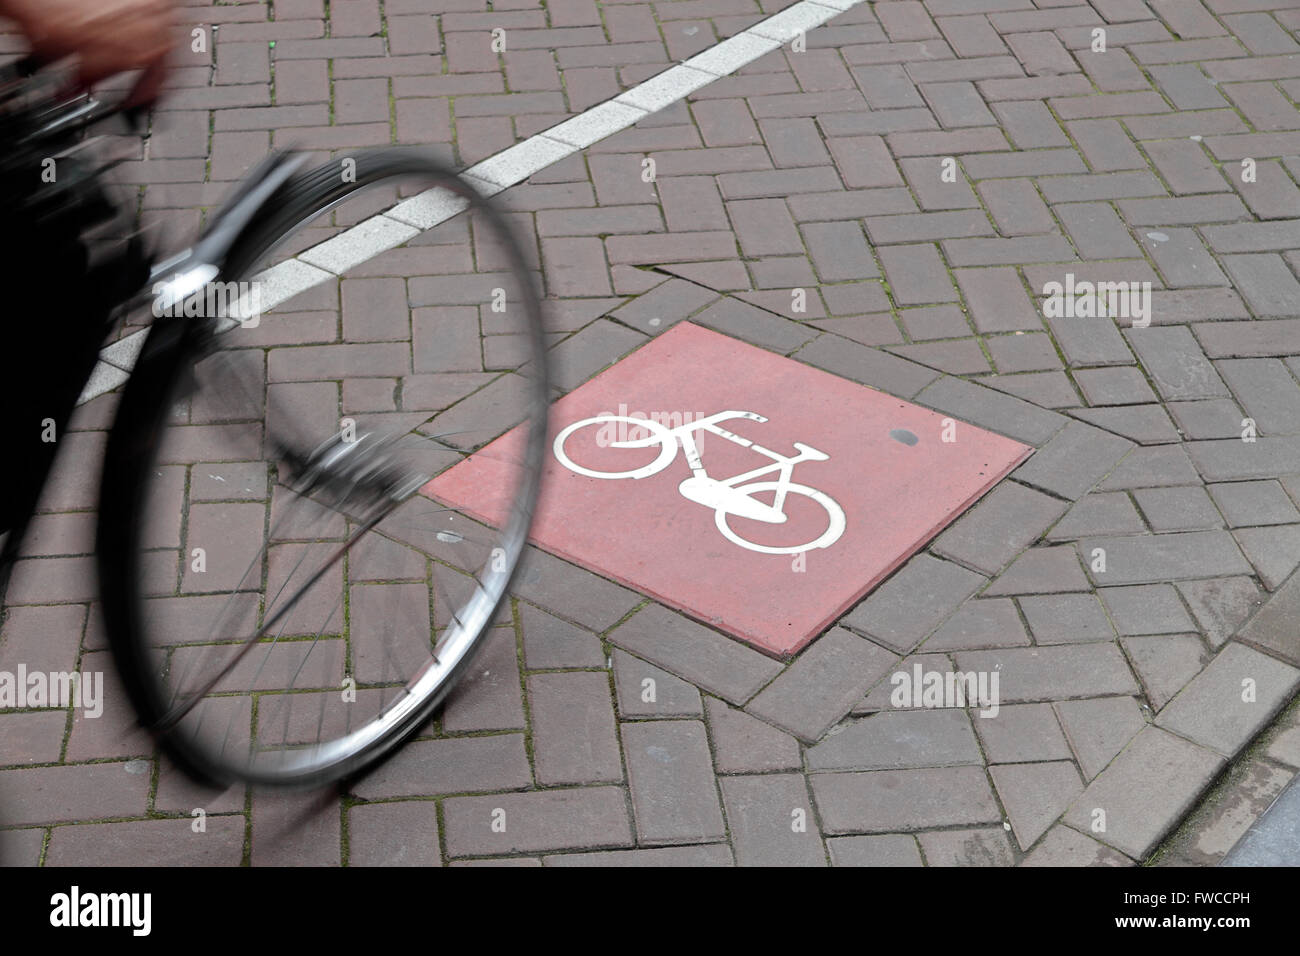 Une bicyclette sur une voie cyclable à Amsterdam, Pays-Bas. Banque D'Images